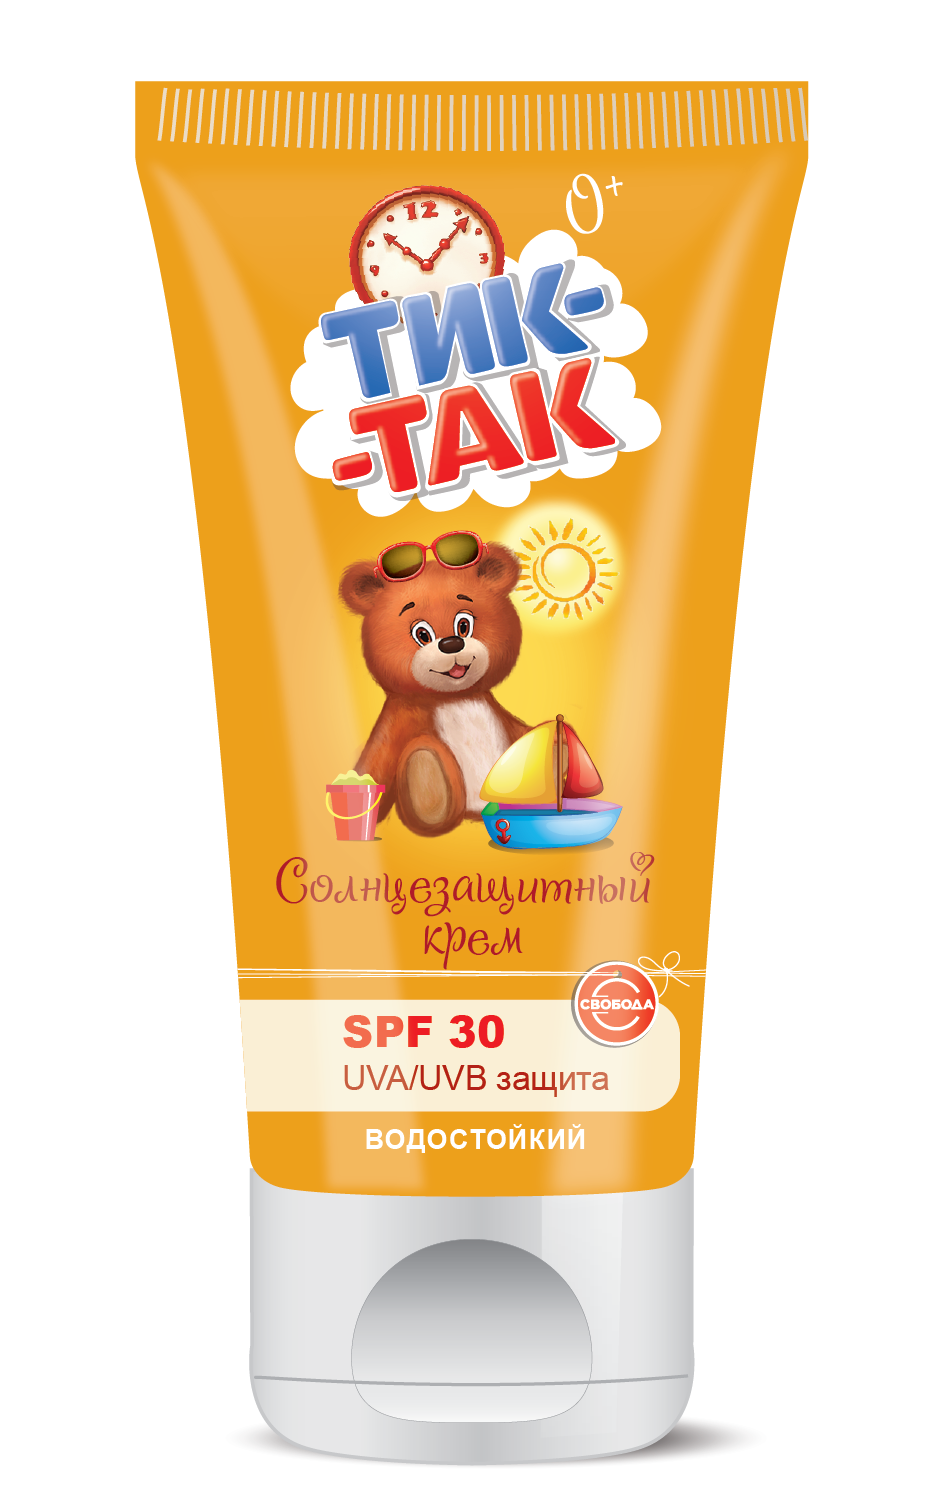 Солнцезащитный крем SPF 30 для детей "ТИК-ТАК"